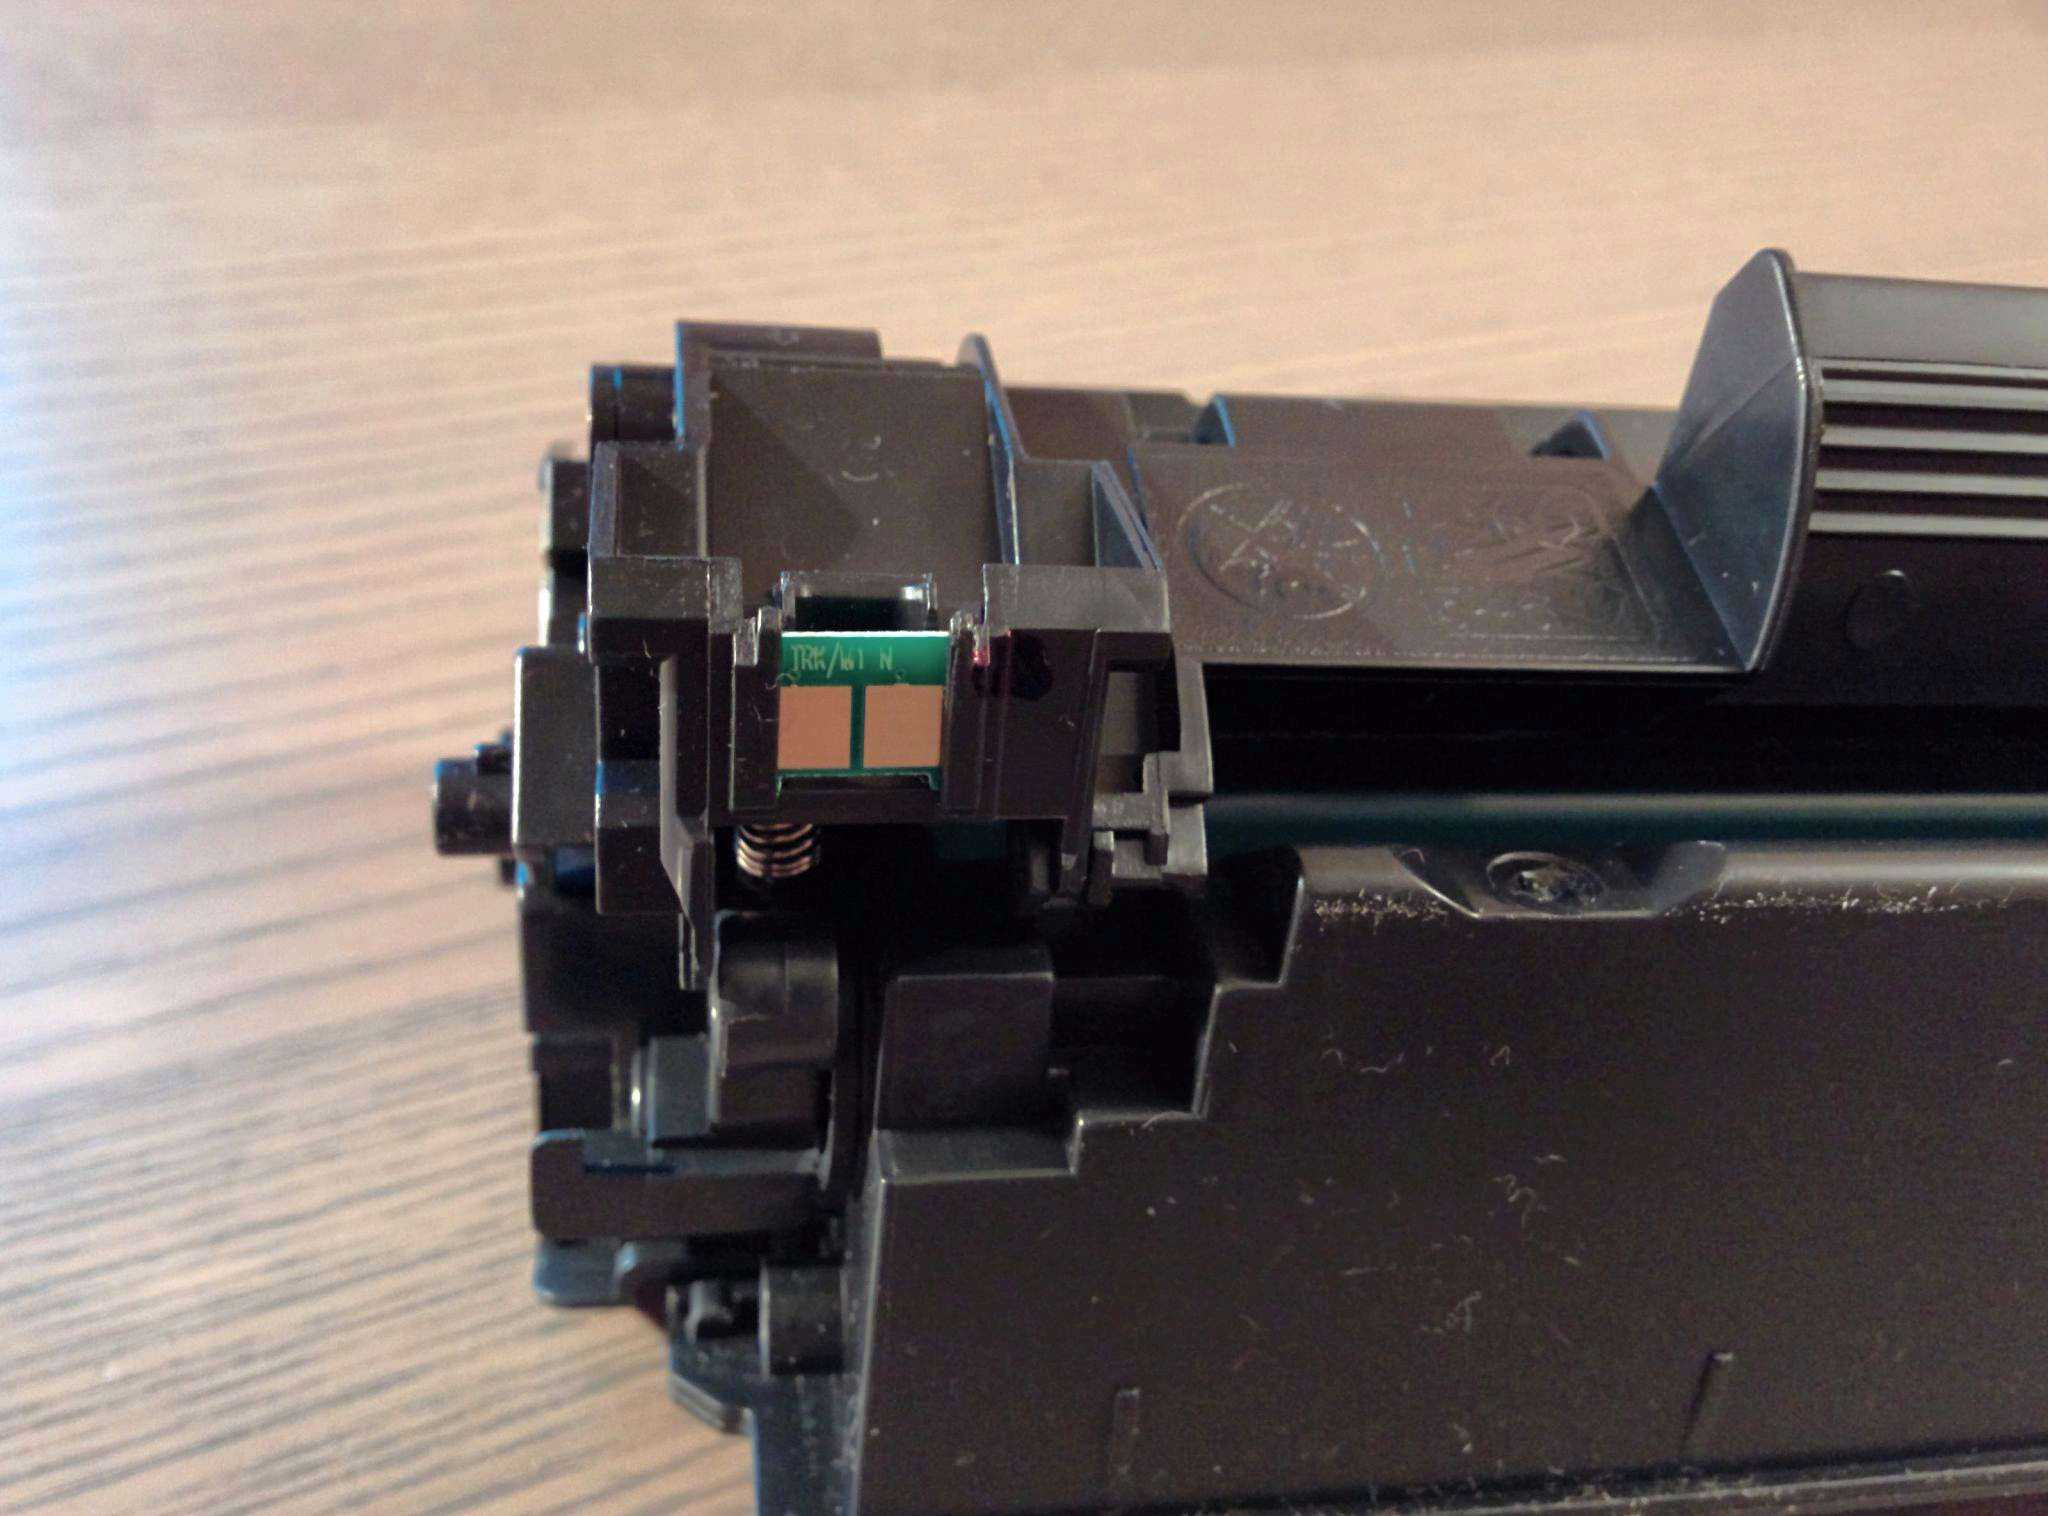 Как настроить принтер hp laserjet p1102